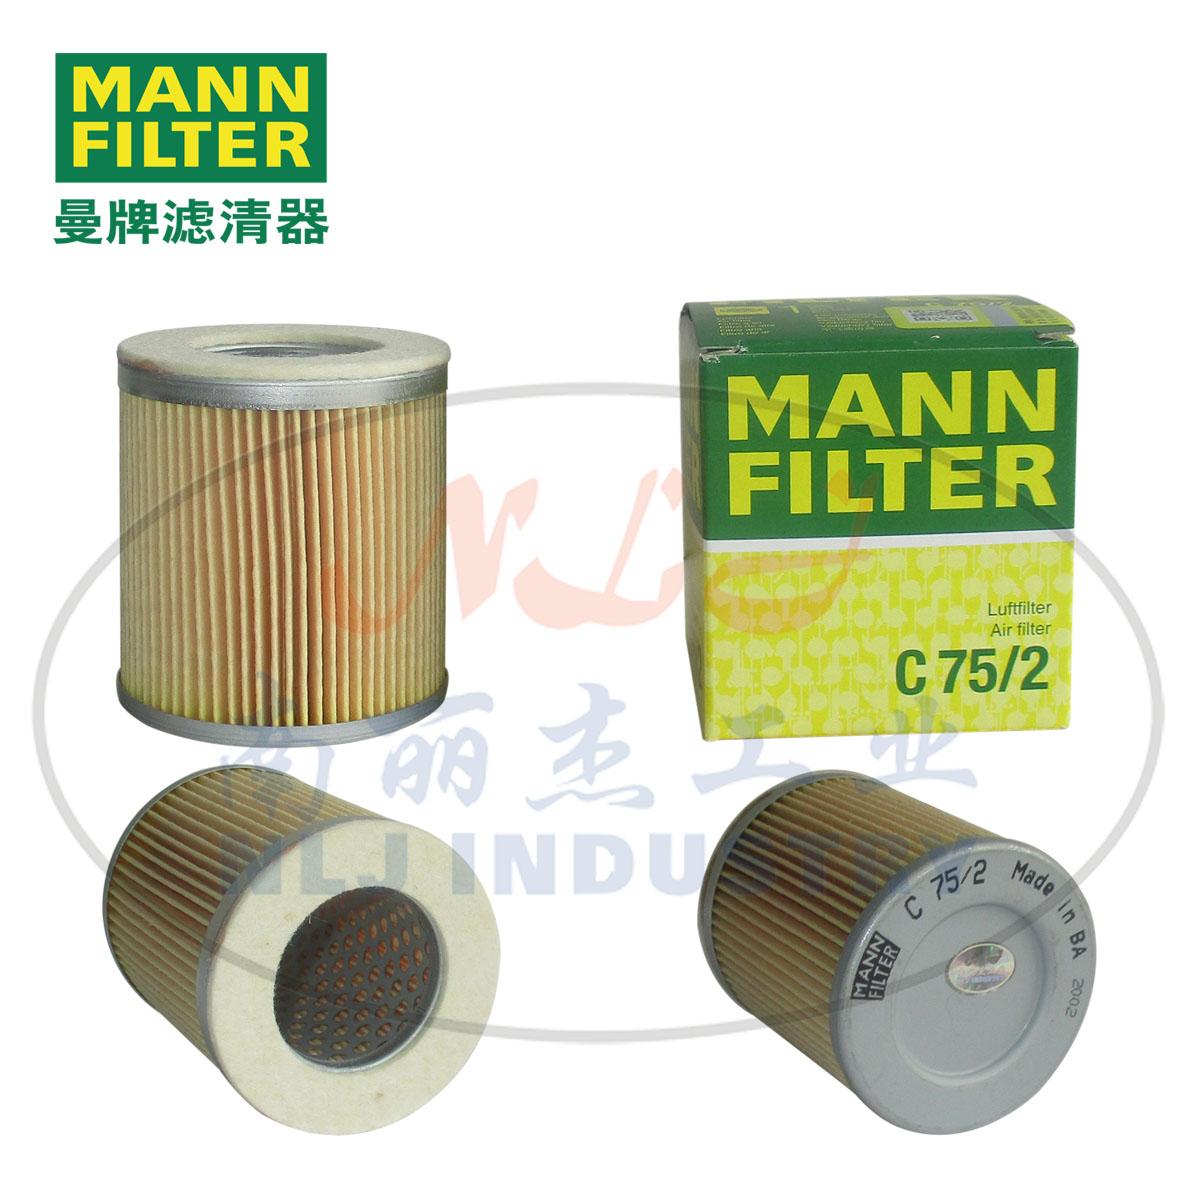 MANN-FILTER曼牌滤清器空气滤芯C75/2